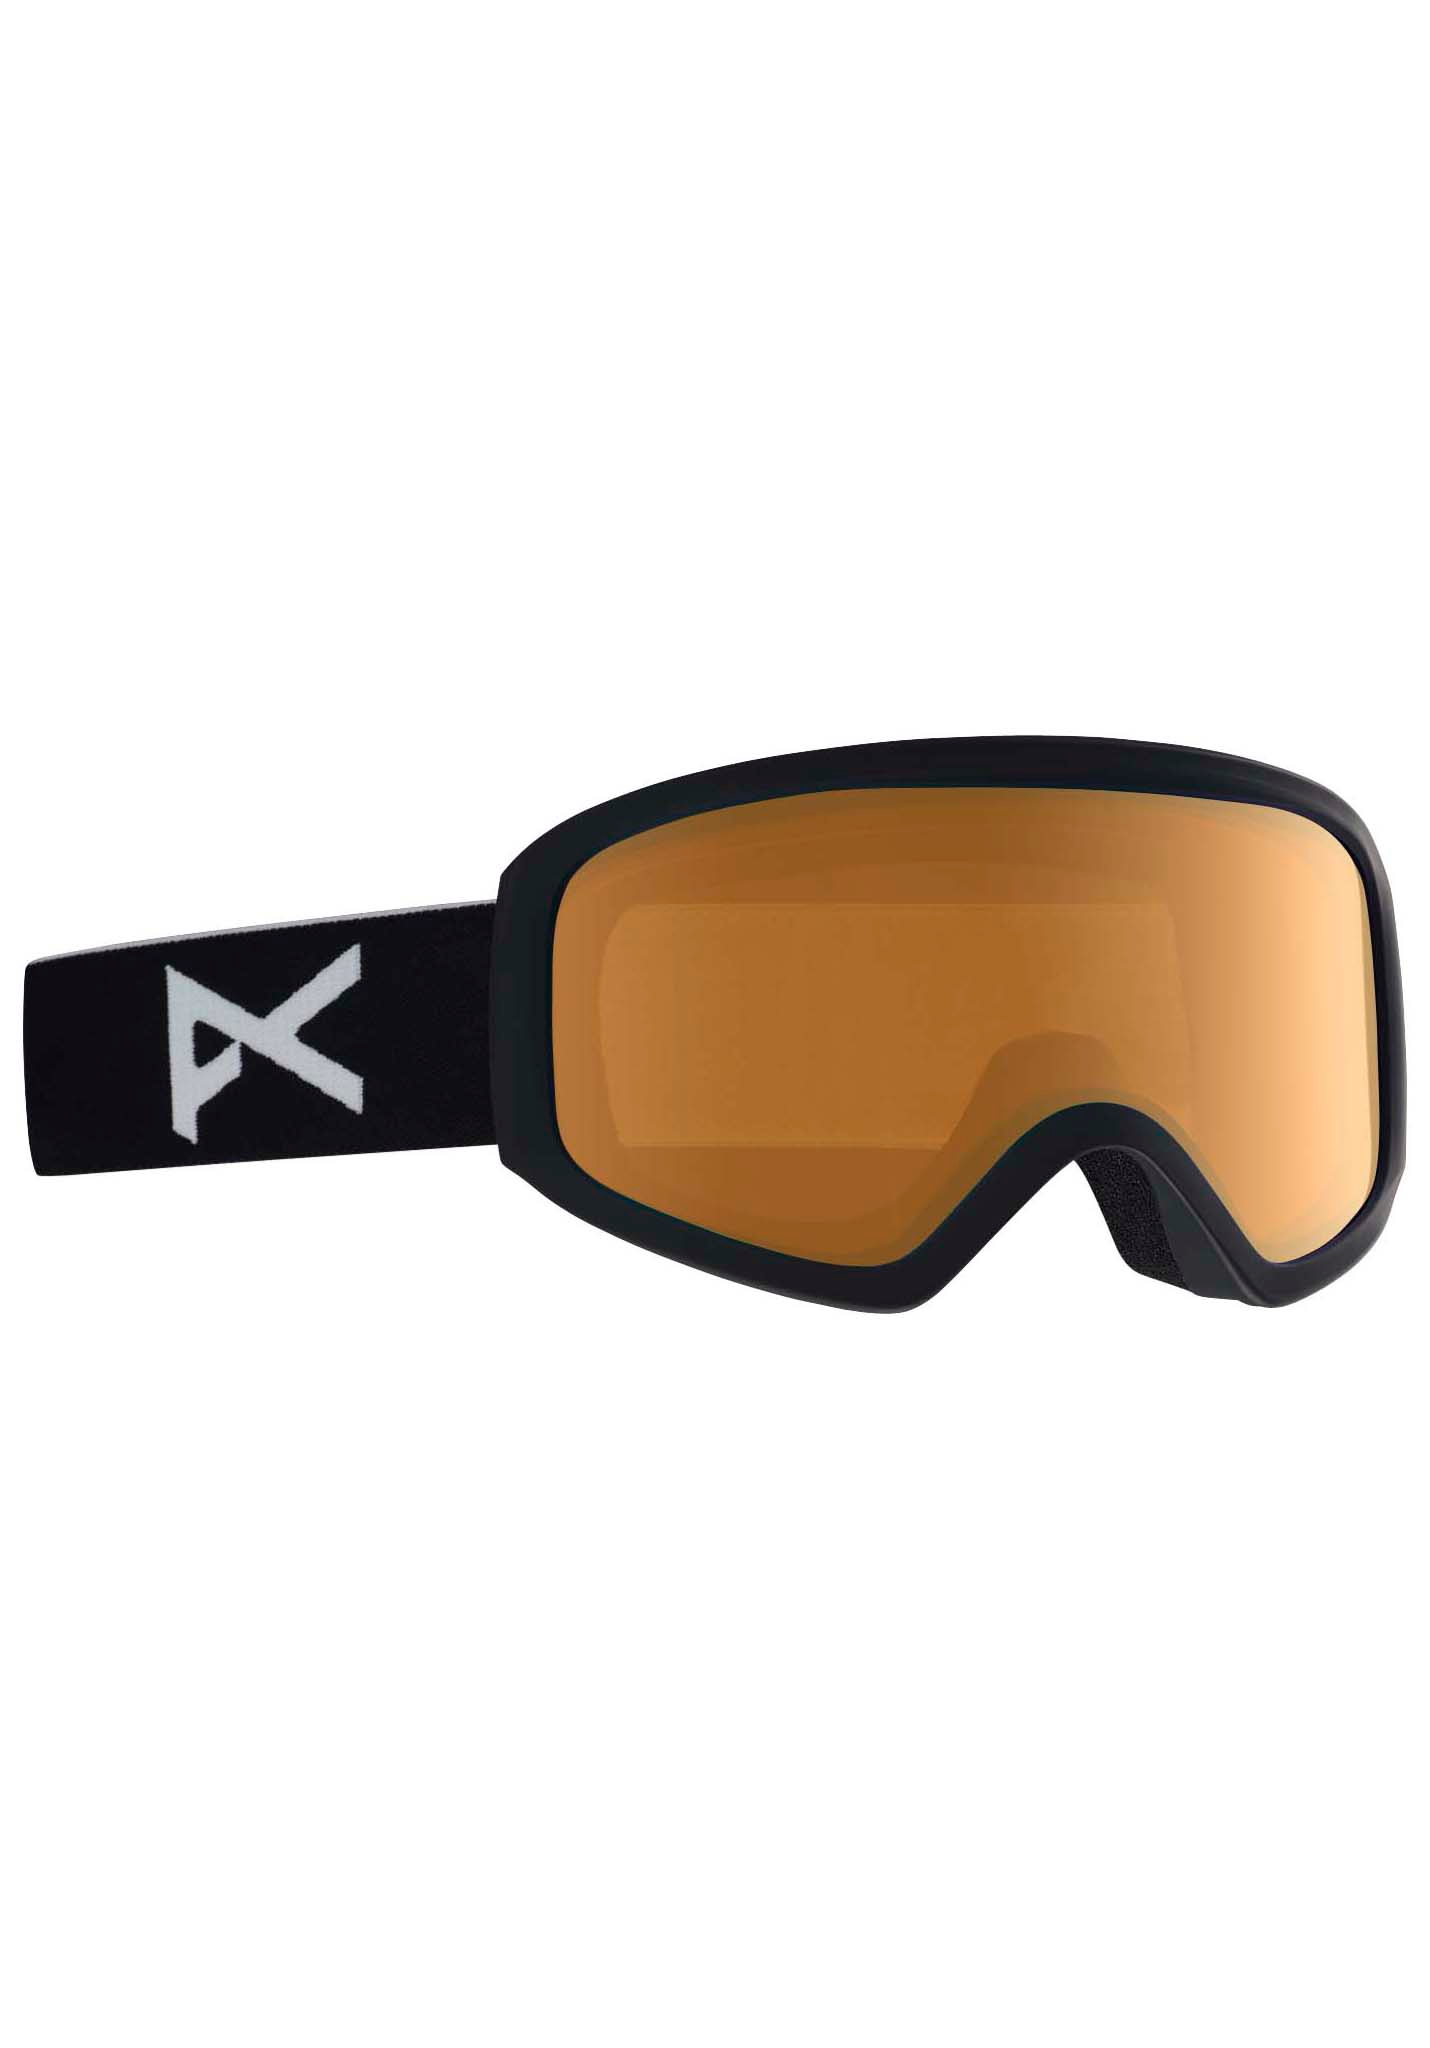 Anon Insight Snowboardbrillen schwarz/bernsteinfarben One Size